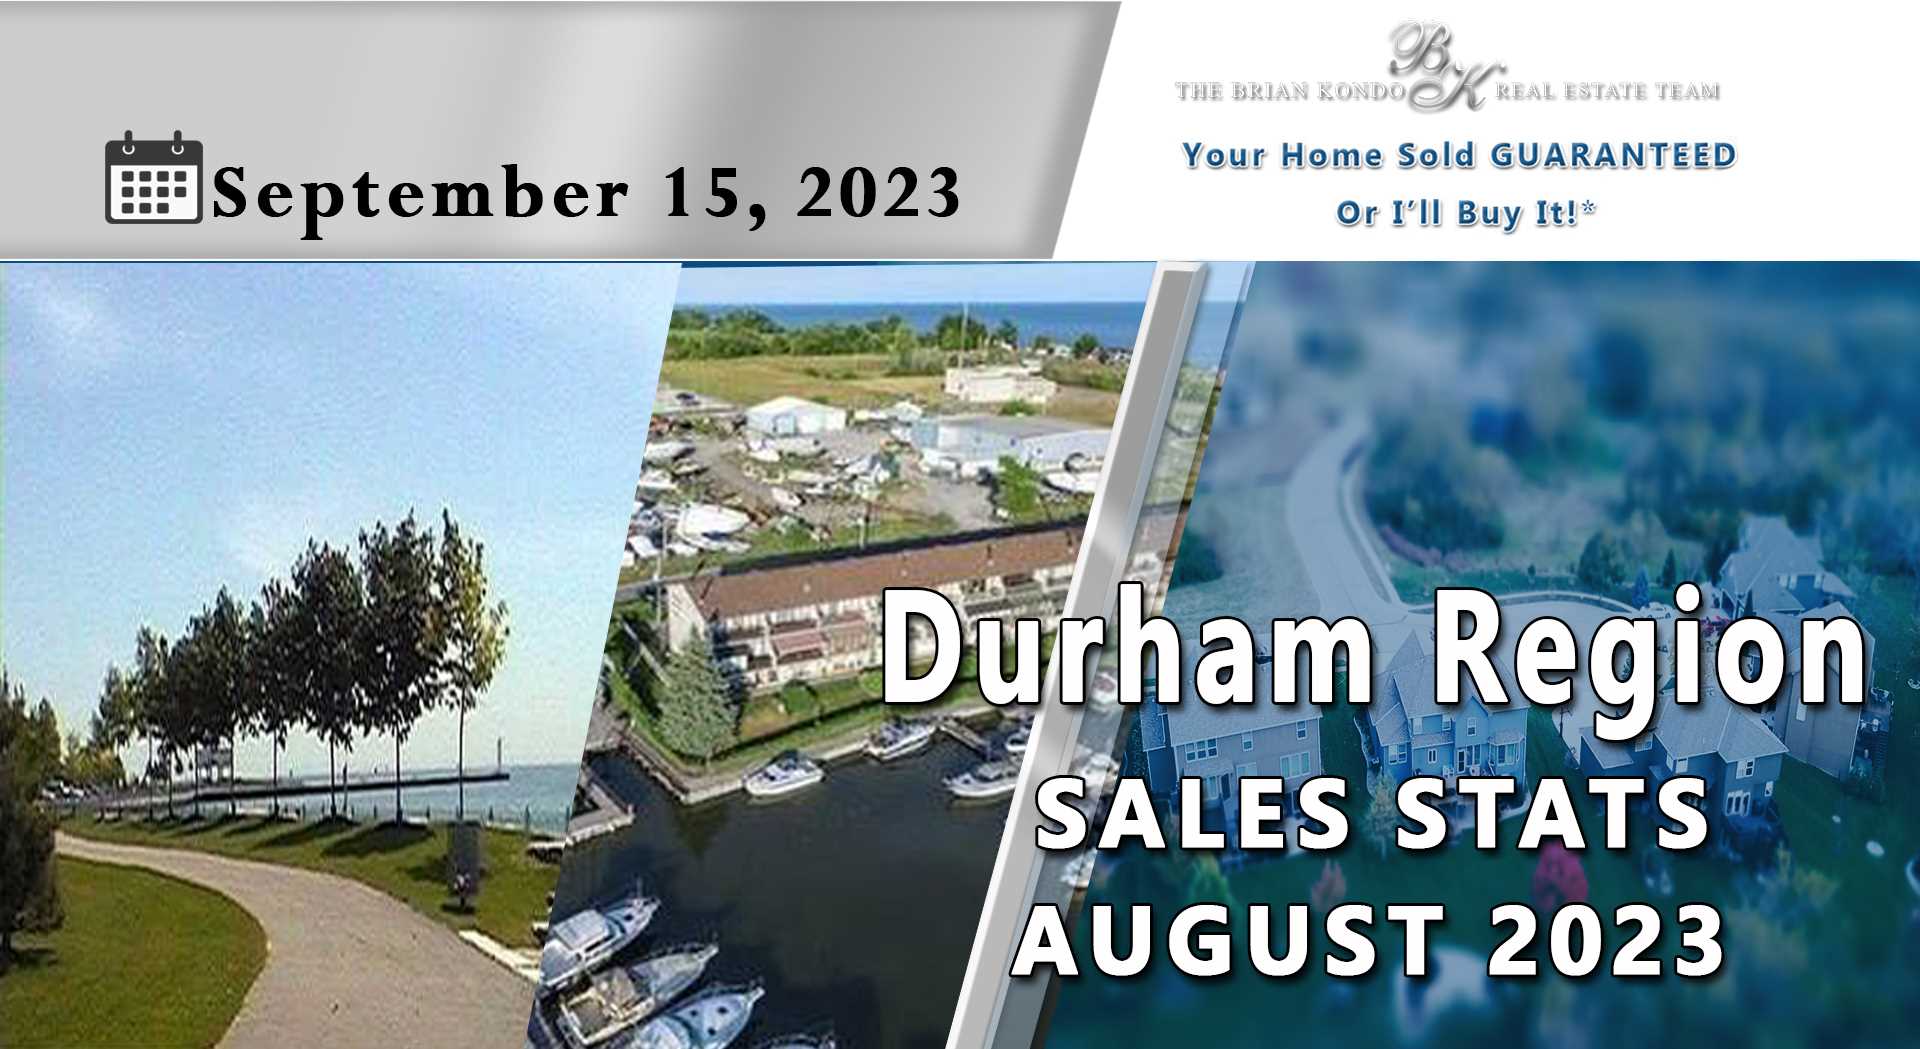 DURHAM REGION SALES STATS AUGUST 2023